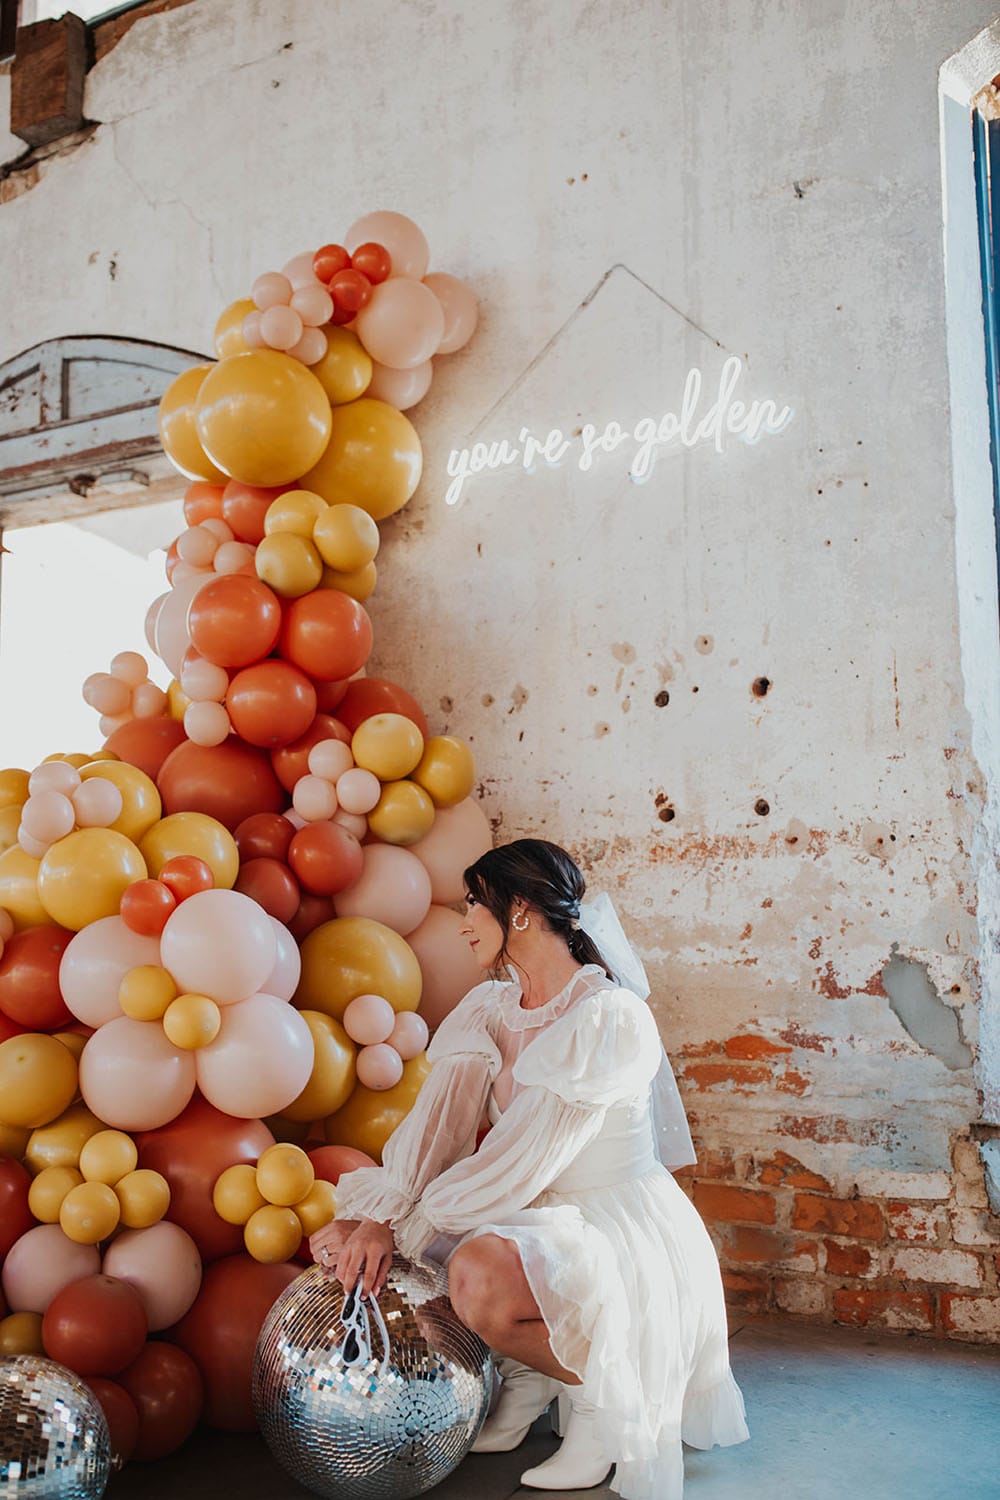 Groovy mod disco-themed boda rebosante de flores